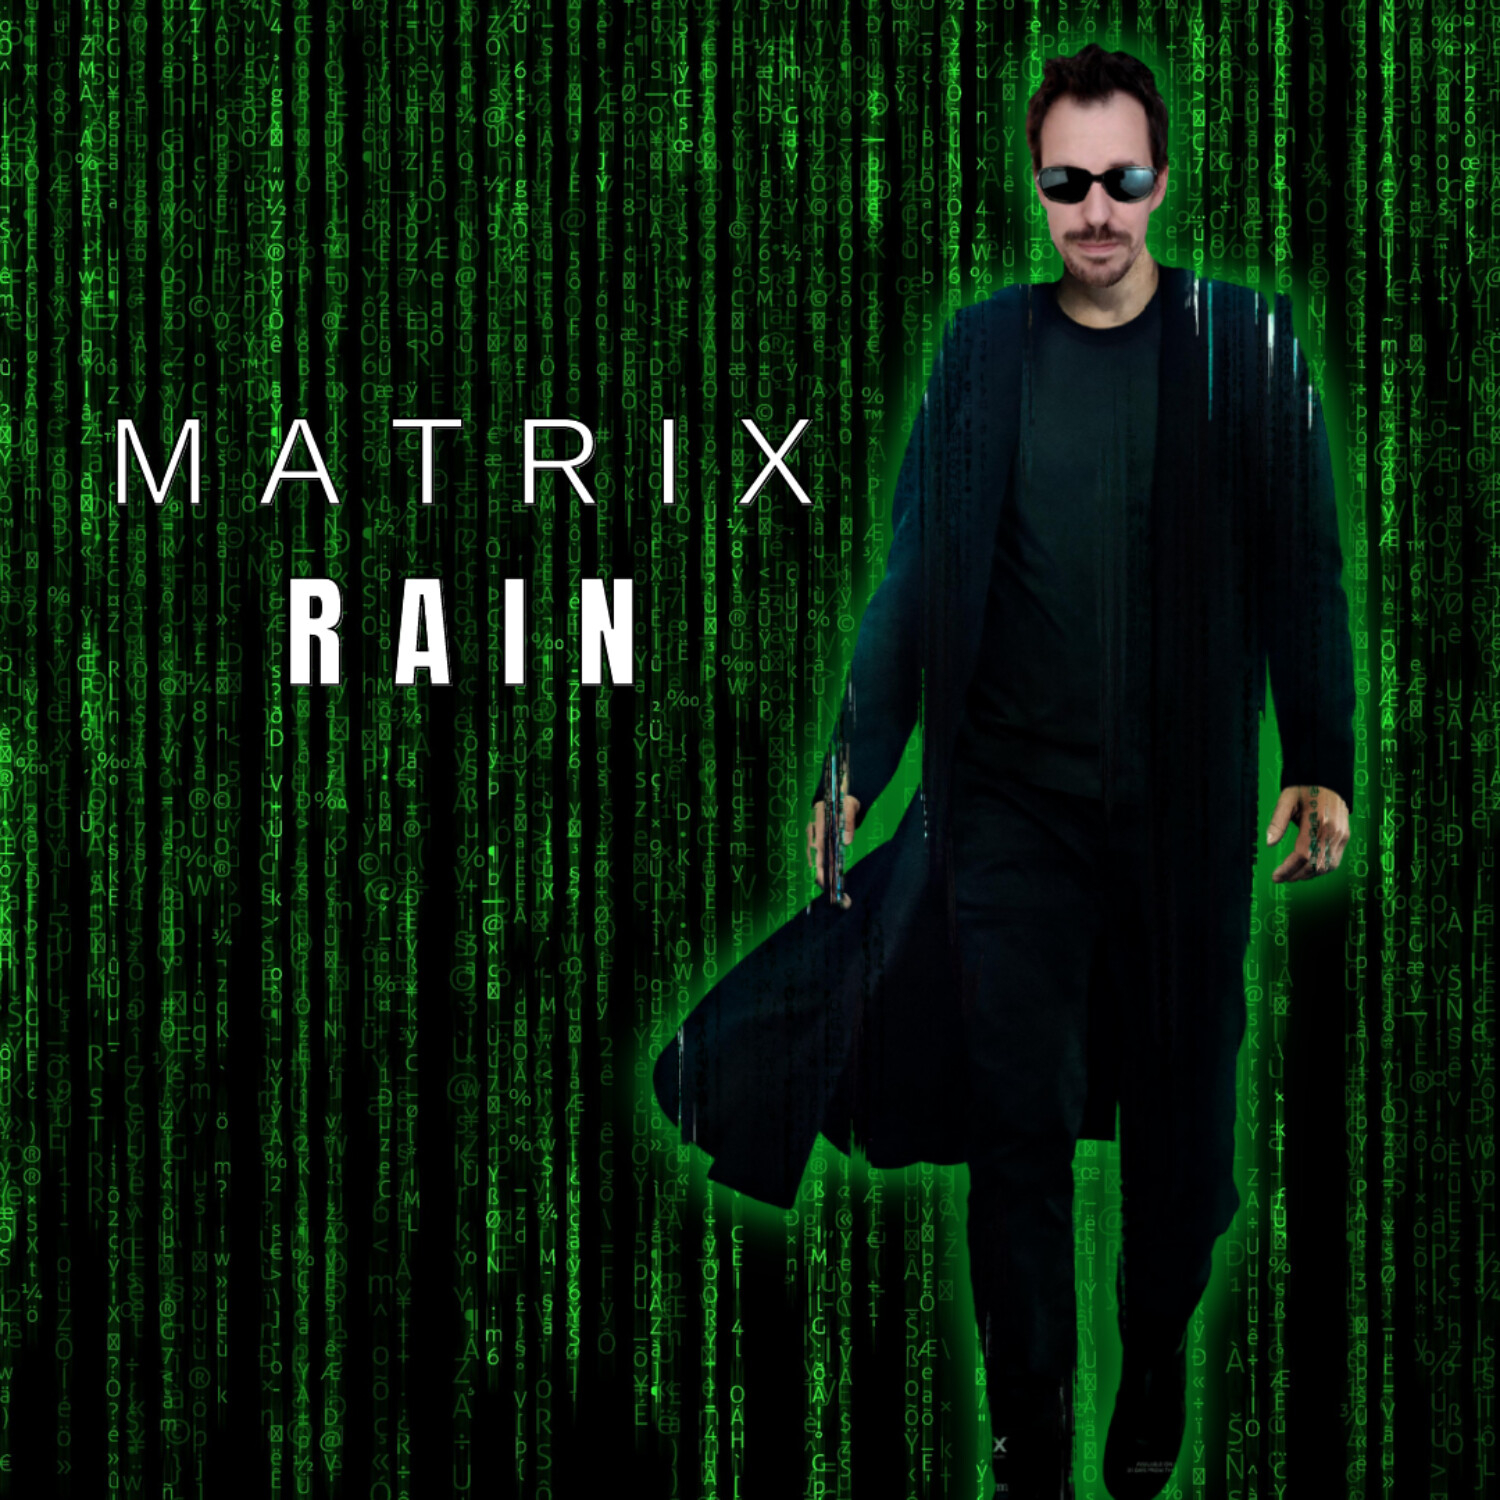 Lluvia de código (Matrix Rain) con Jetpack Compose 🔵 - 🔴 Matrix Resurrections |EP 113